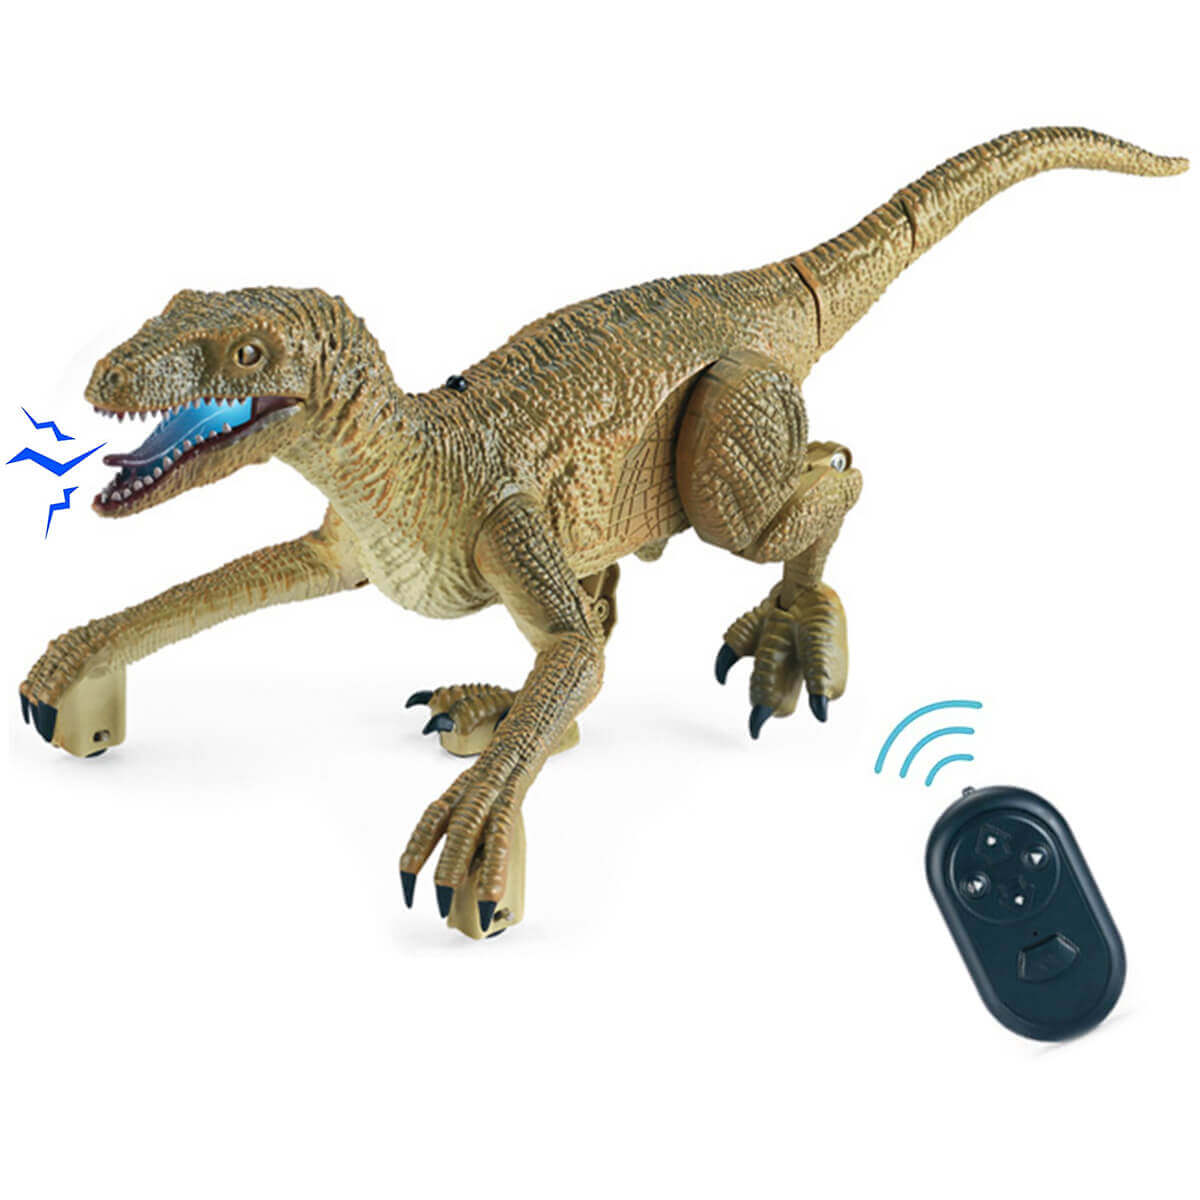 LED 조명과 포효하는 소리가 특징인 원격 제어 벨로시랩터 공룡 장난감으로 쥬라기 시대의 스릴을 경험하세요